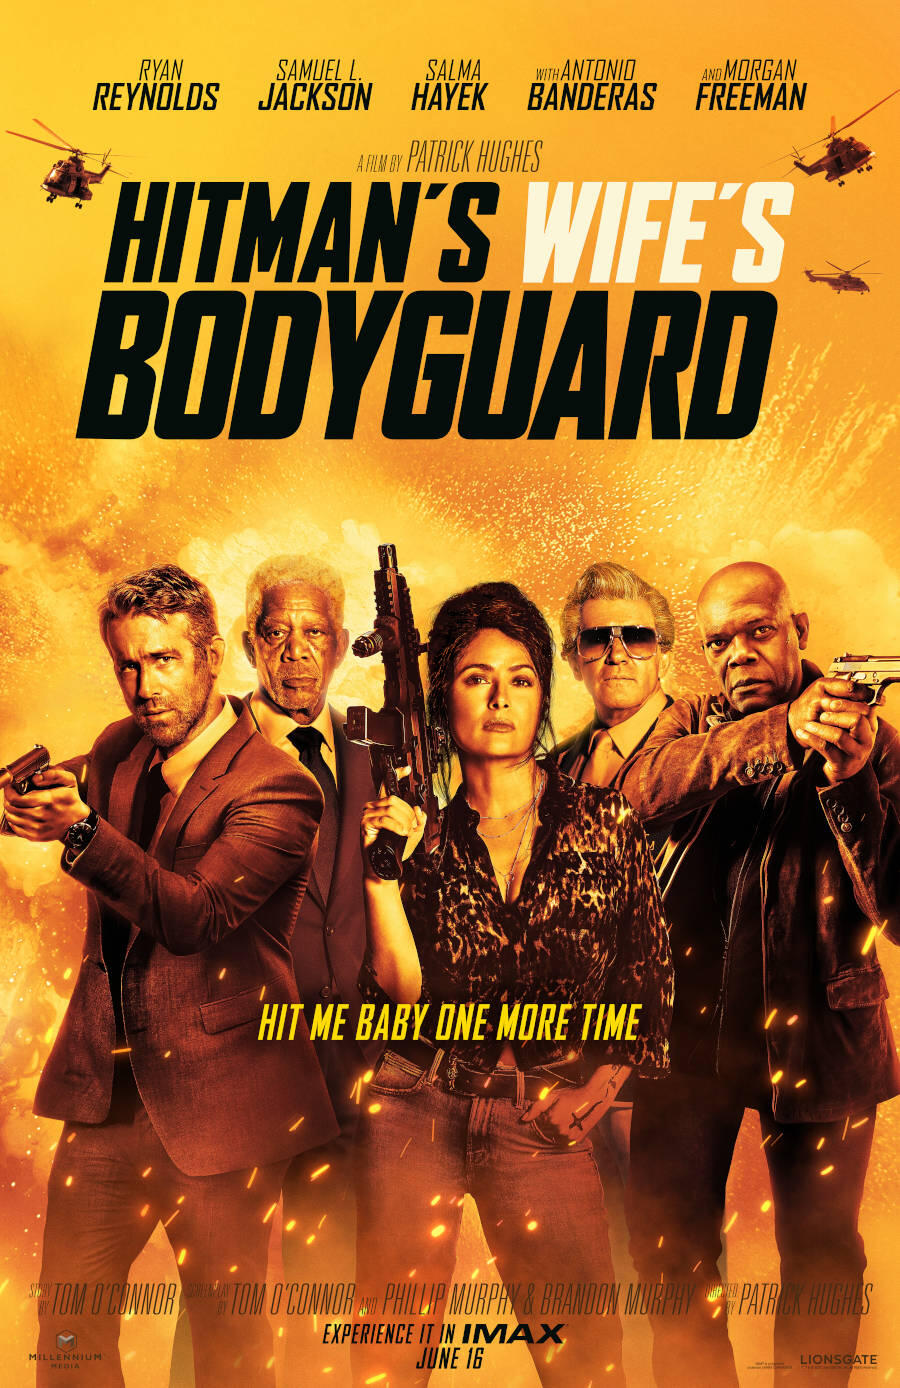 The Hitman's Wife's Bodyguard (2021) - Tickets & Showtimes Near You |  Fandango